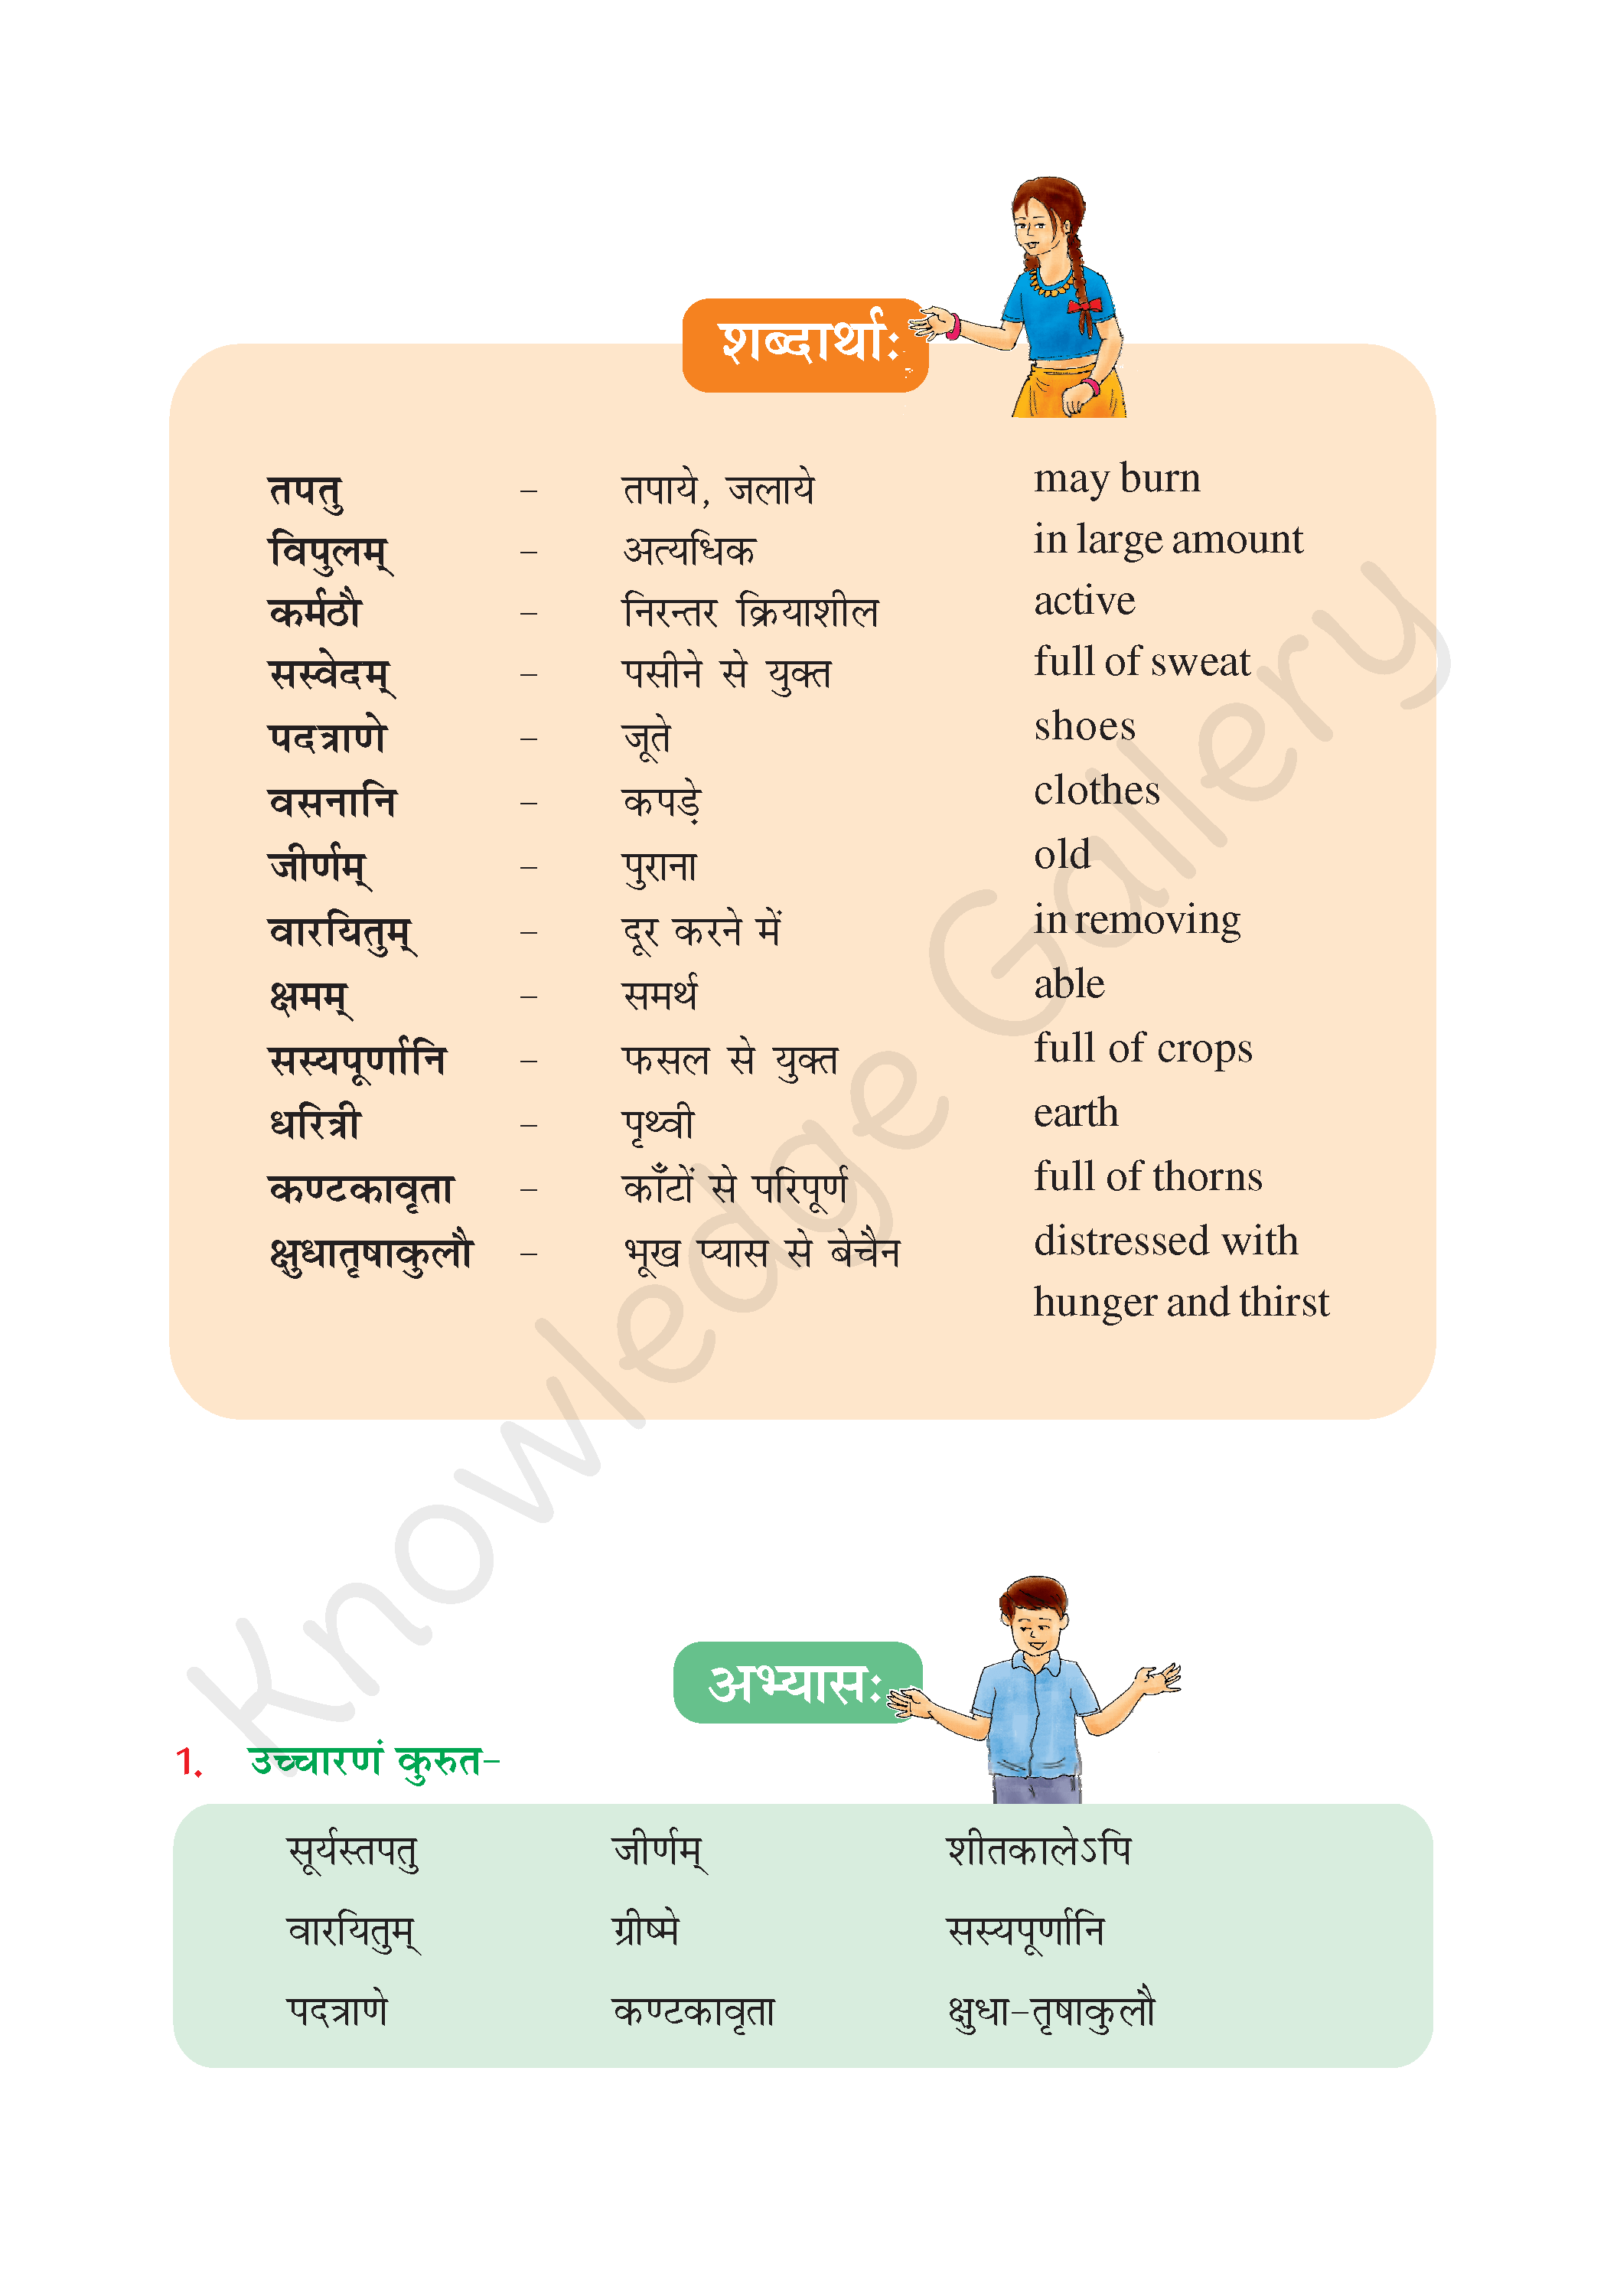 NCERT Solution For Class 6 Sanskrit Chapter 10 part 3